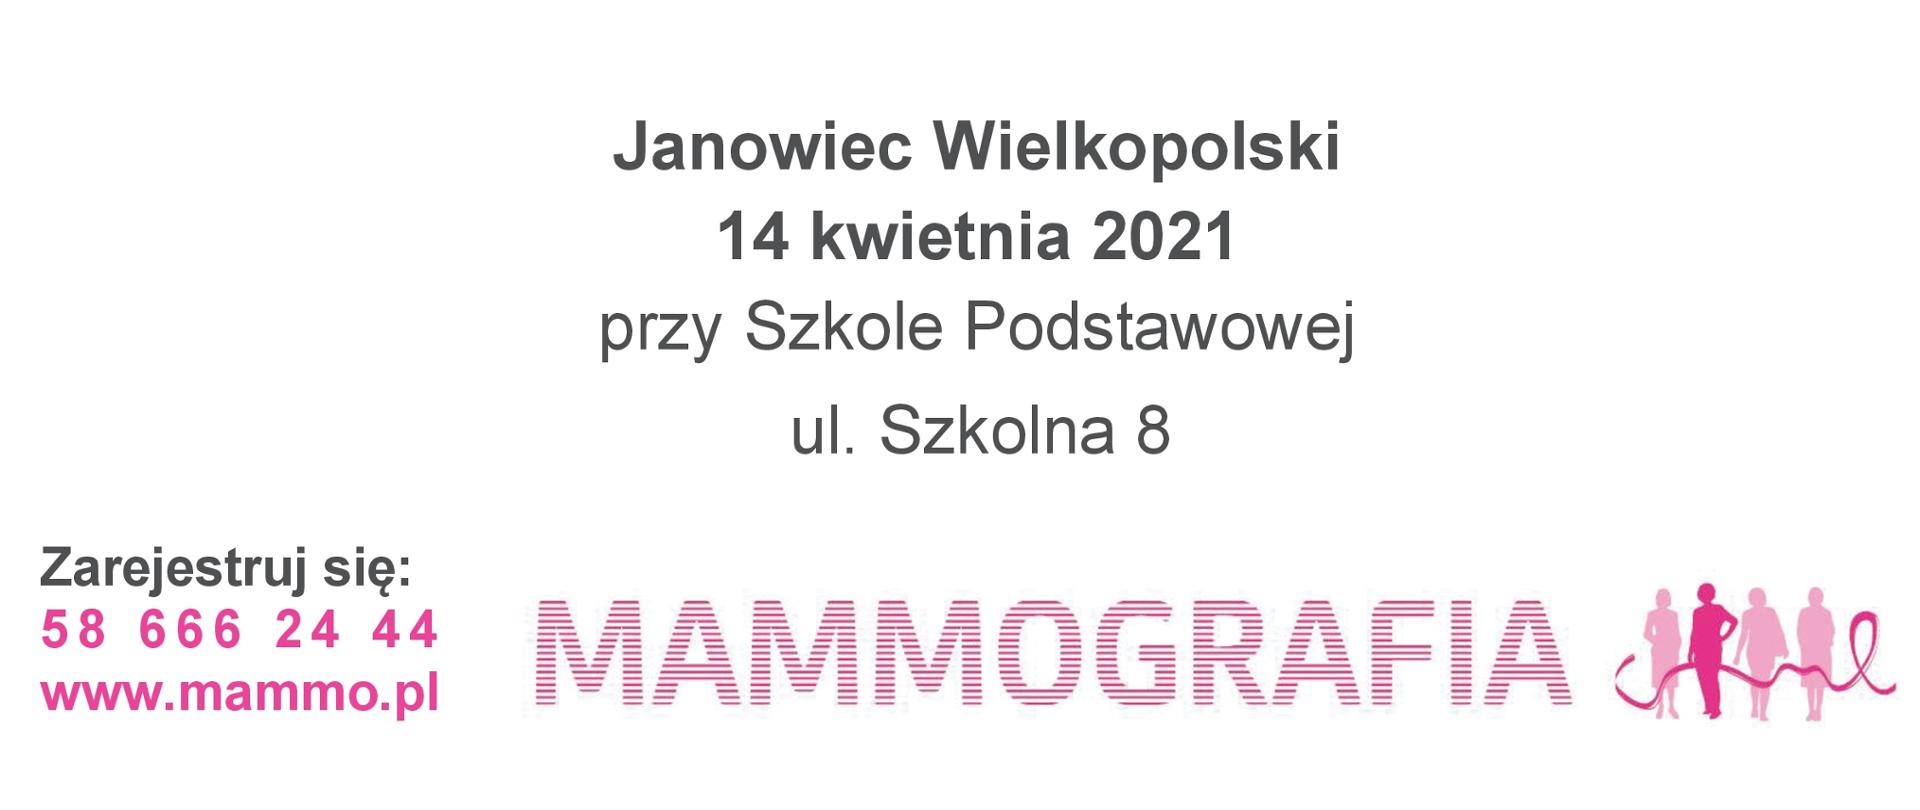 Bezpłatna mammografia w mobilnej pracowni mammograficznej LUX MED - Janowiec Wielkopolski – 14 kwietnia 2021 w godzinach od 9.00 do 15.00 przy Szkole Podstawowej, ul. Szkolna 8